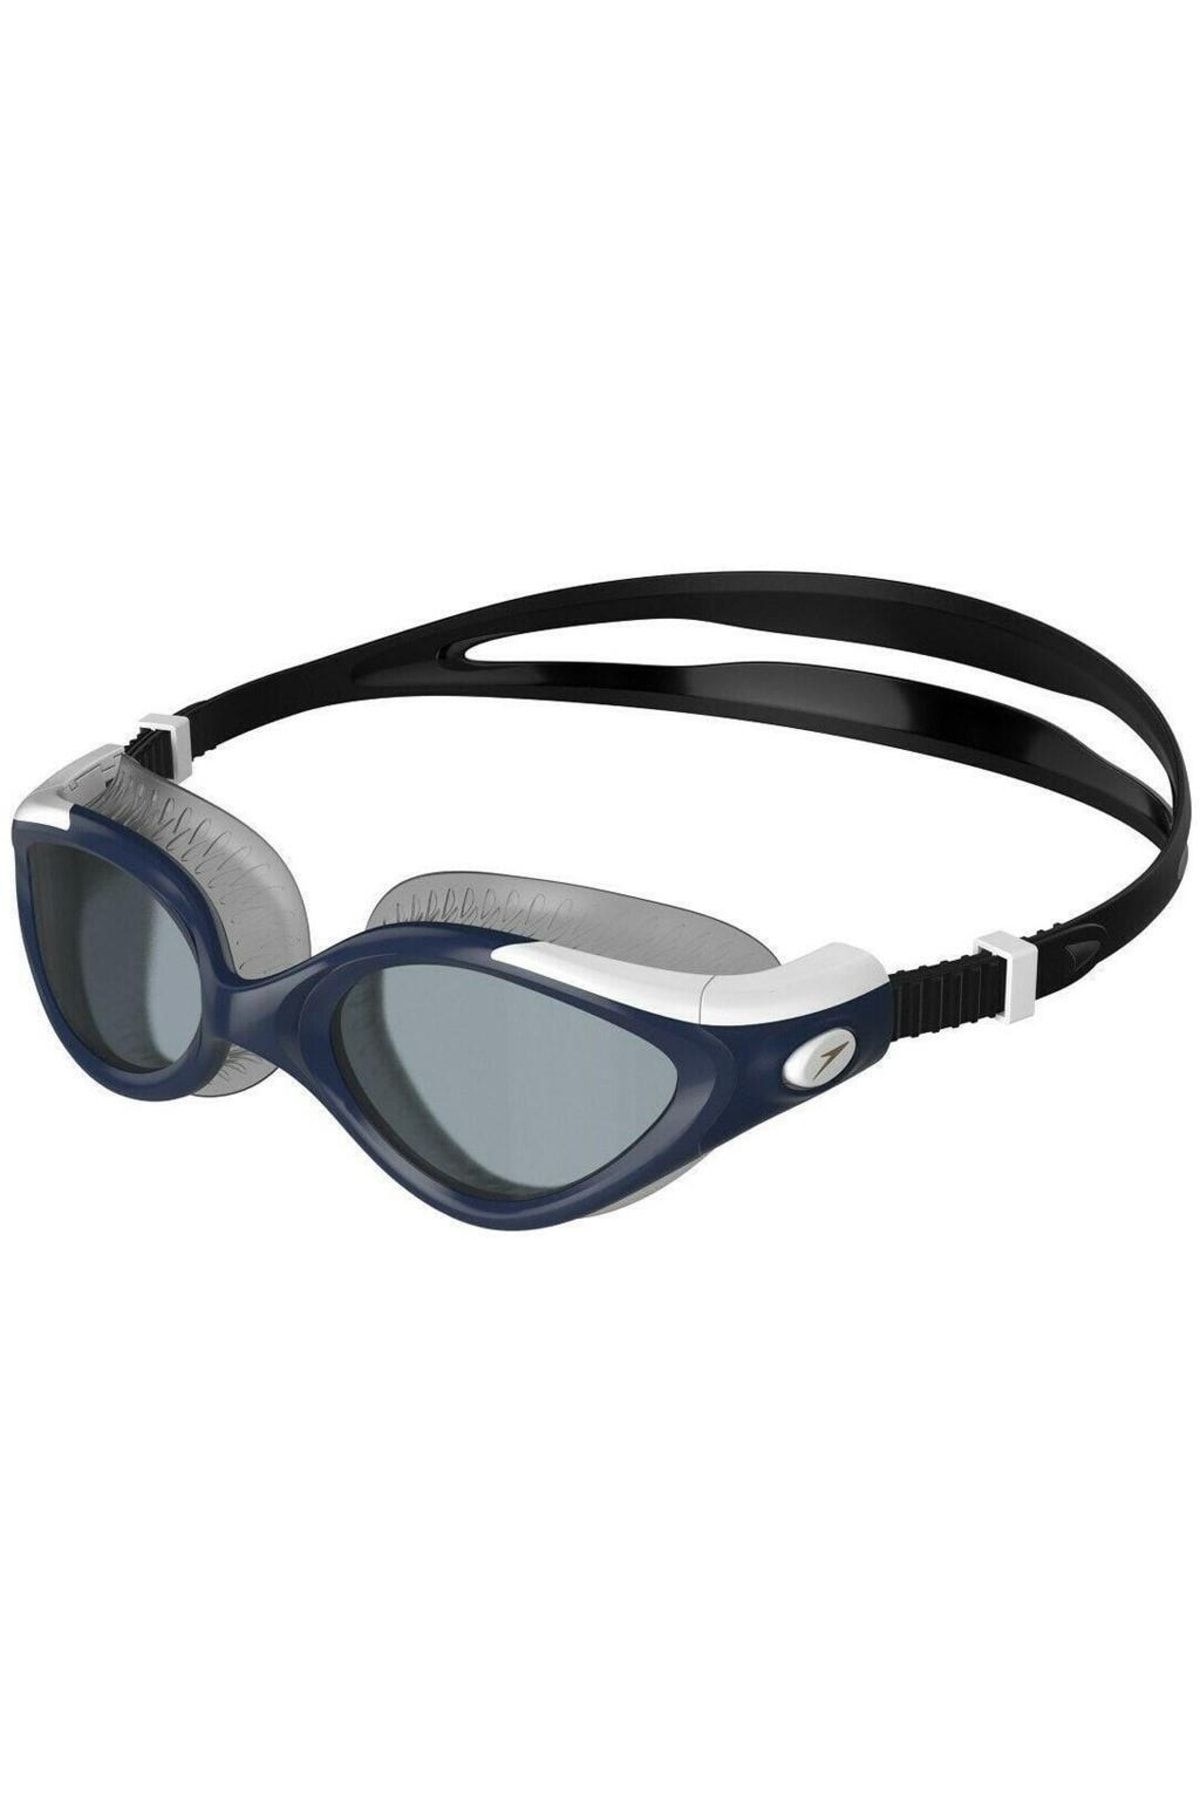 SPEEDO Futura Bıofuse Flexıseal Kadın Yüzücü Gözlüğü 8-11314f985